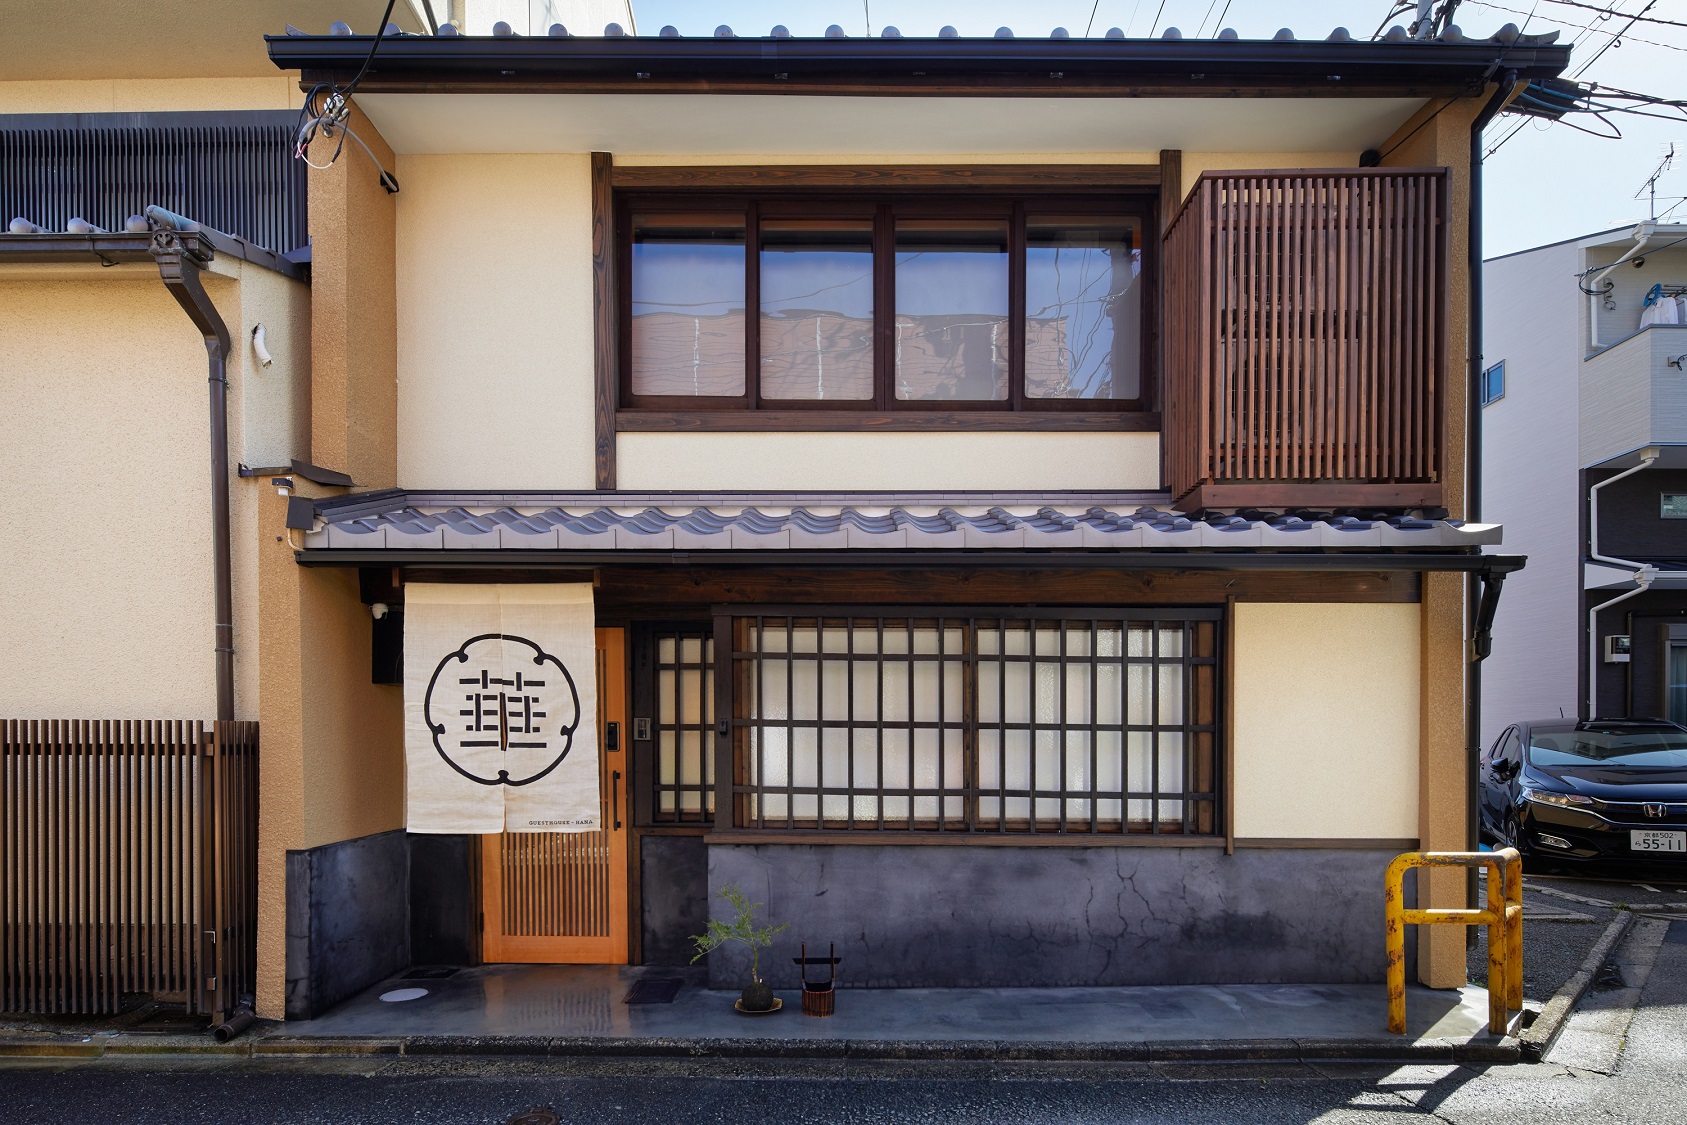 京都一棟貸し町屋旅館「華・雲来居」 施設全景